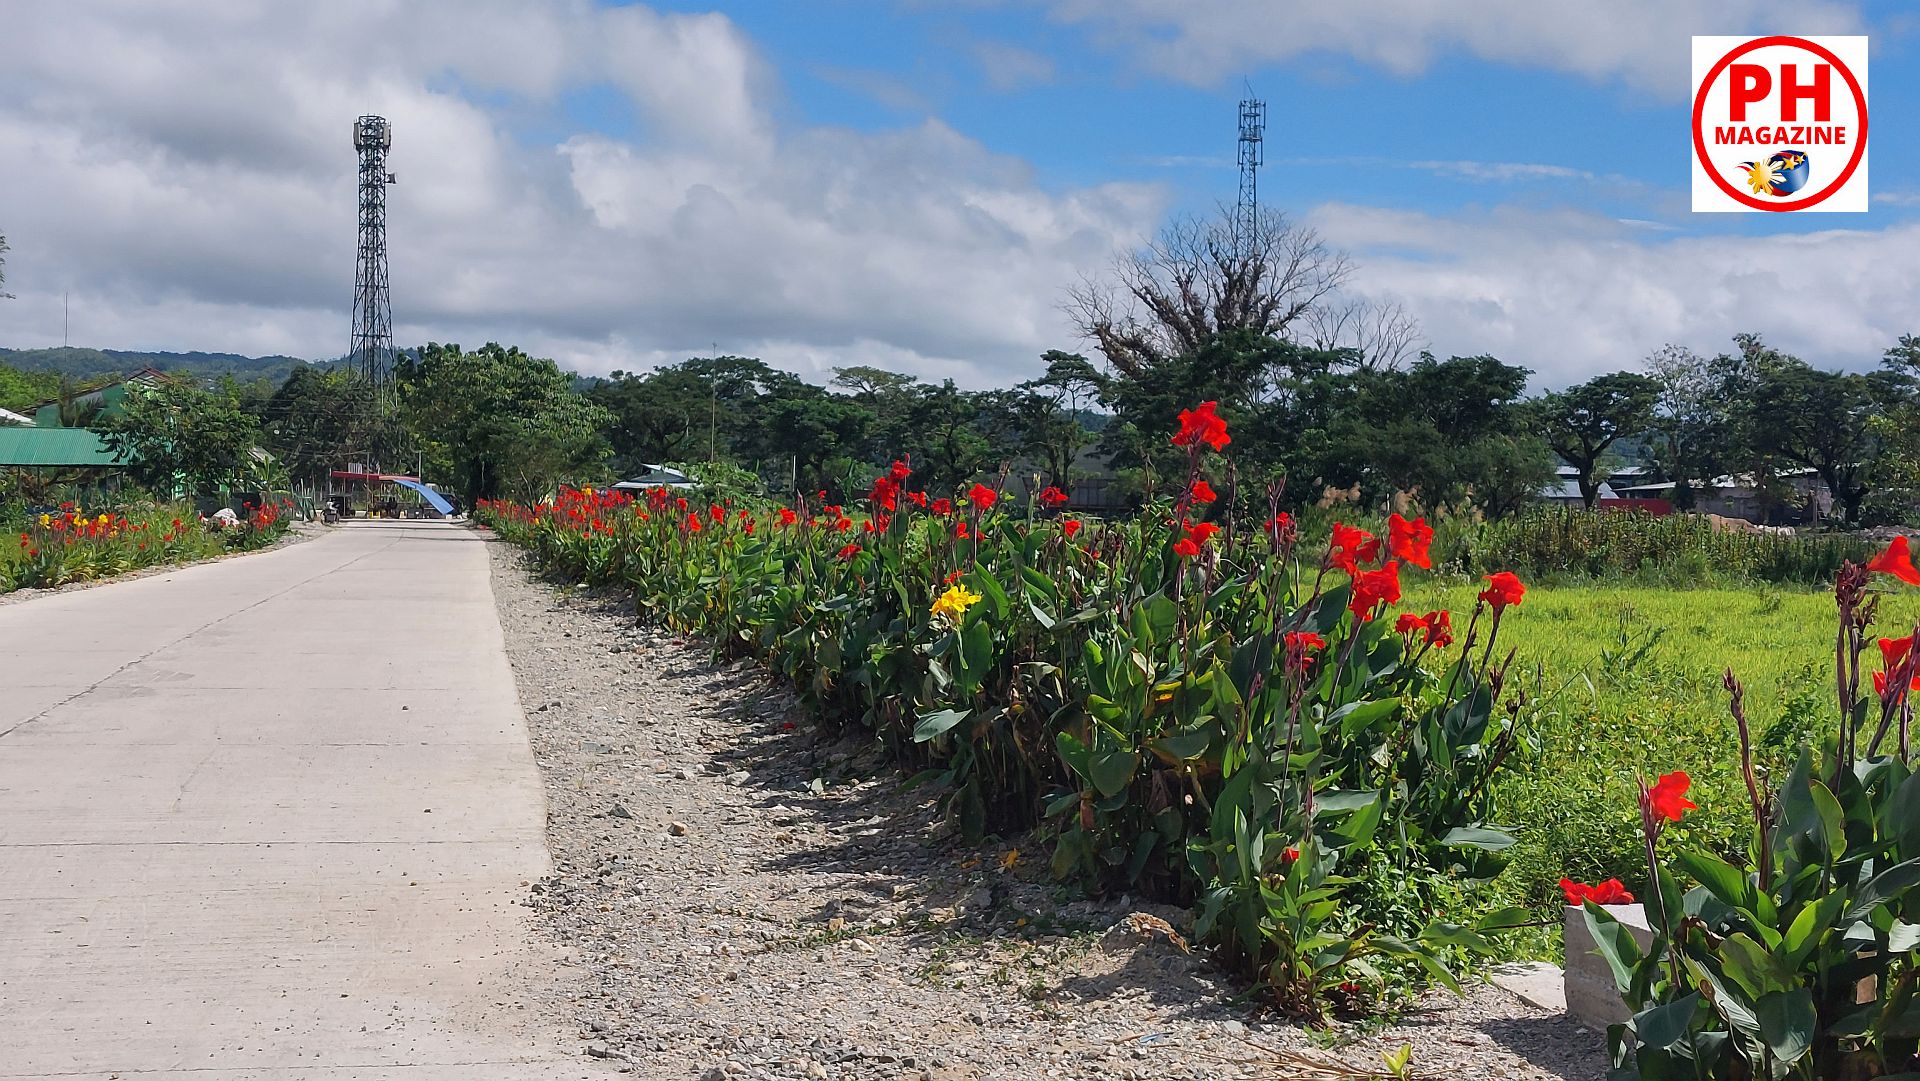 MEINE FOTOSERIE: Blumenbepflanzung an einer Zufahrtsstraße